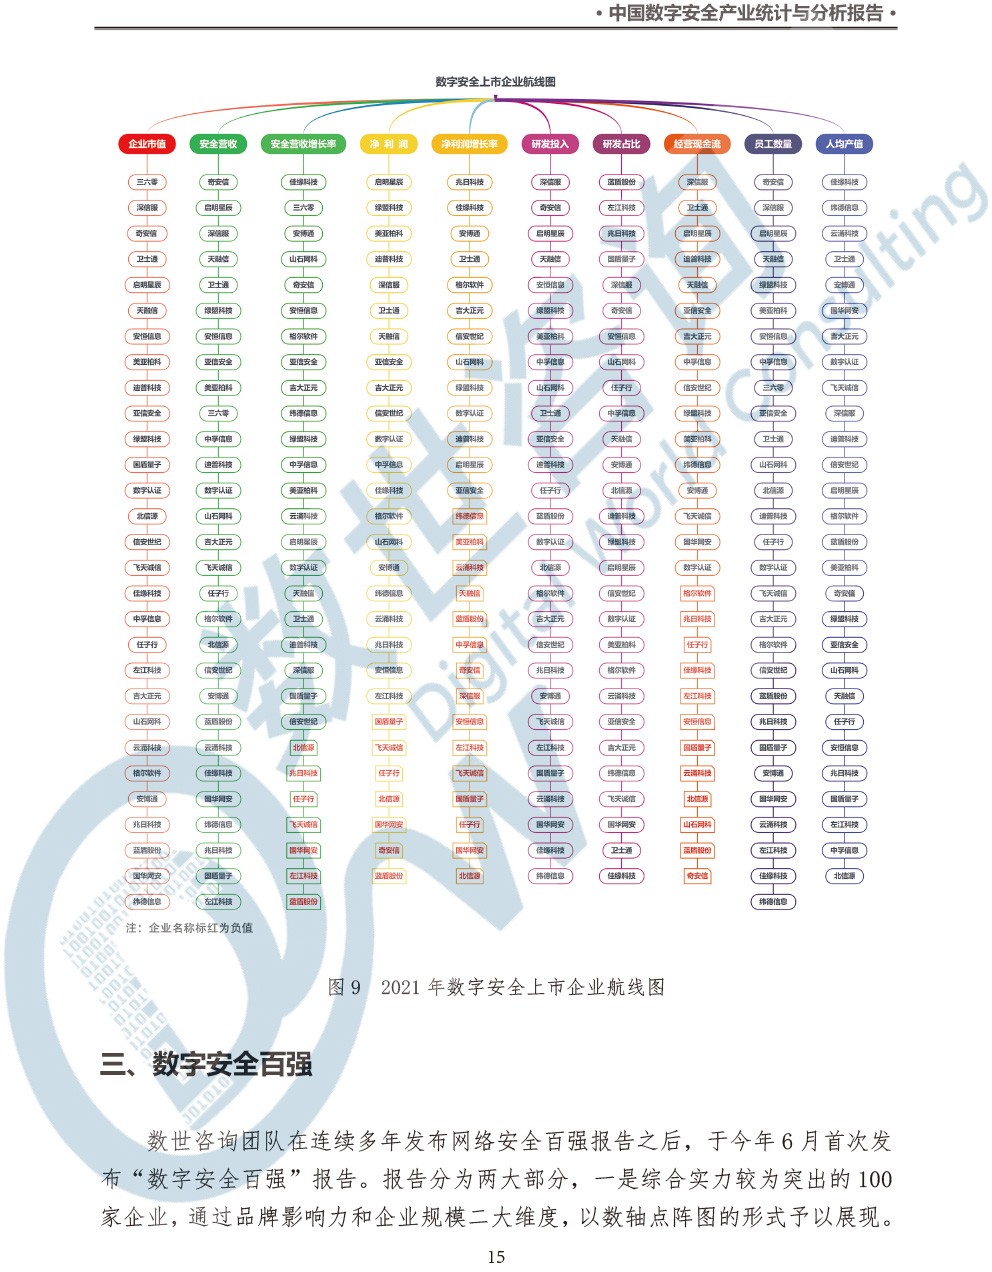 中国数字安全产业统计与分析报告(2022)图-22.jpg